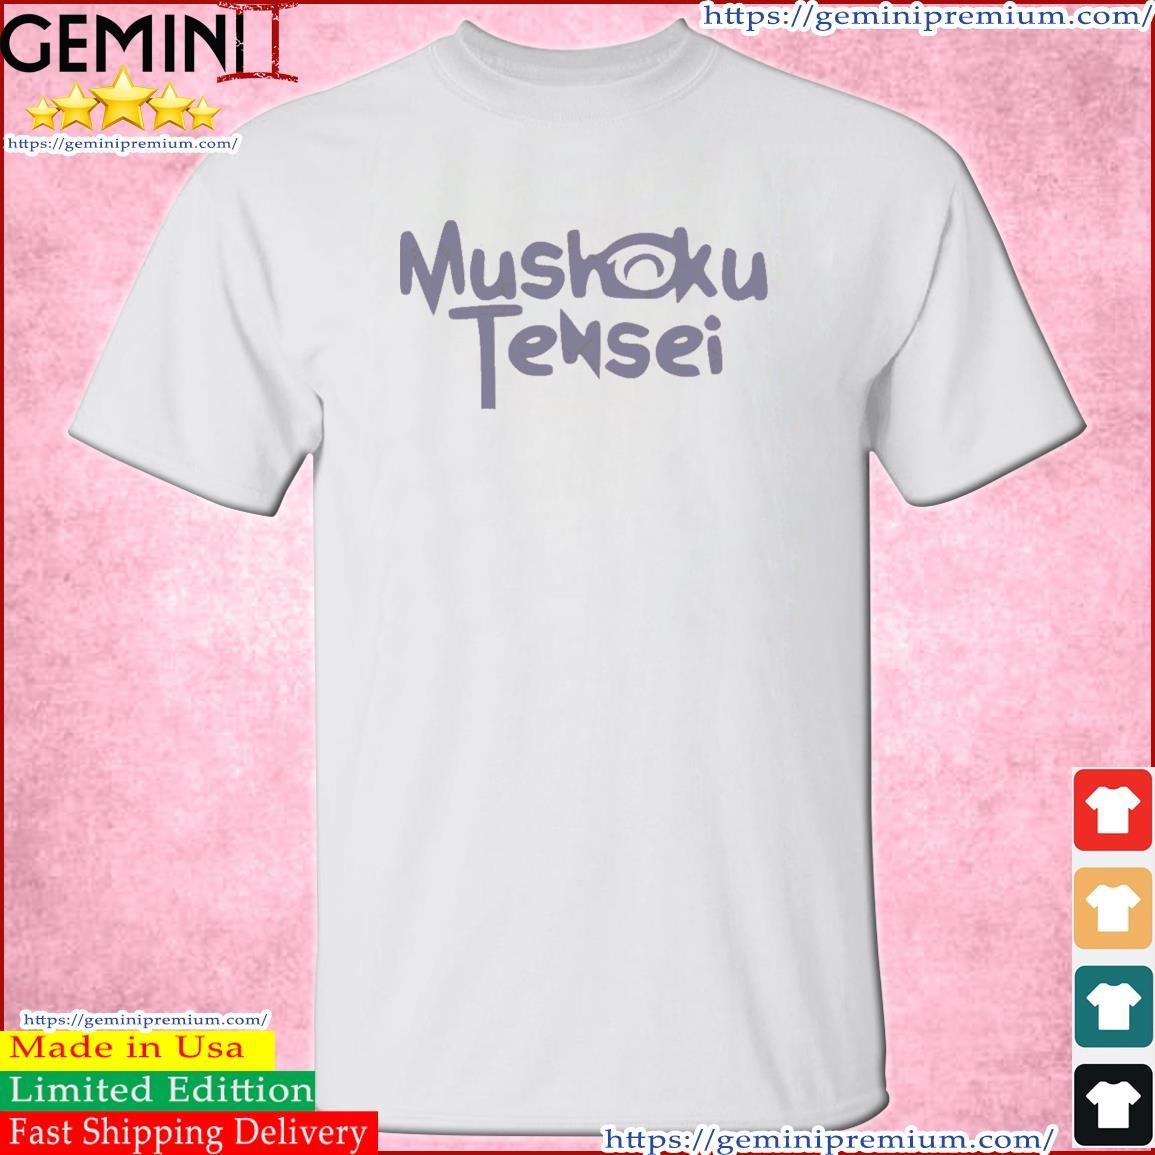 Mushoku Tensei Logo Text Shirt